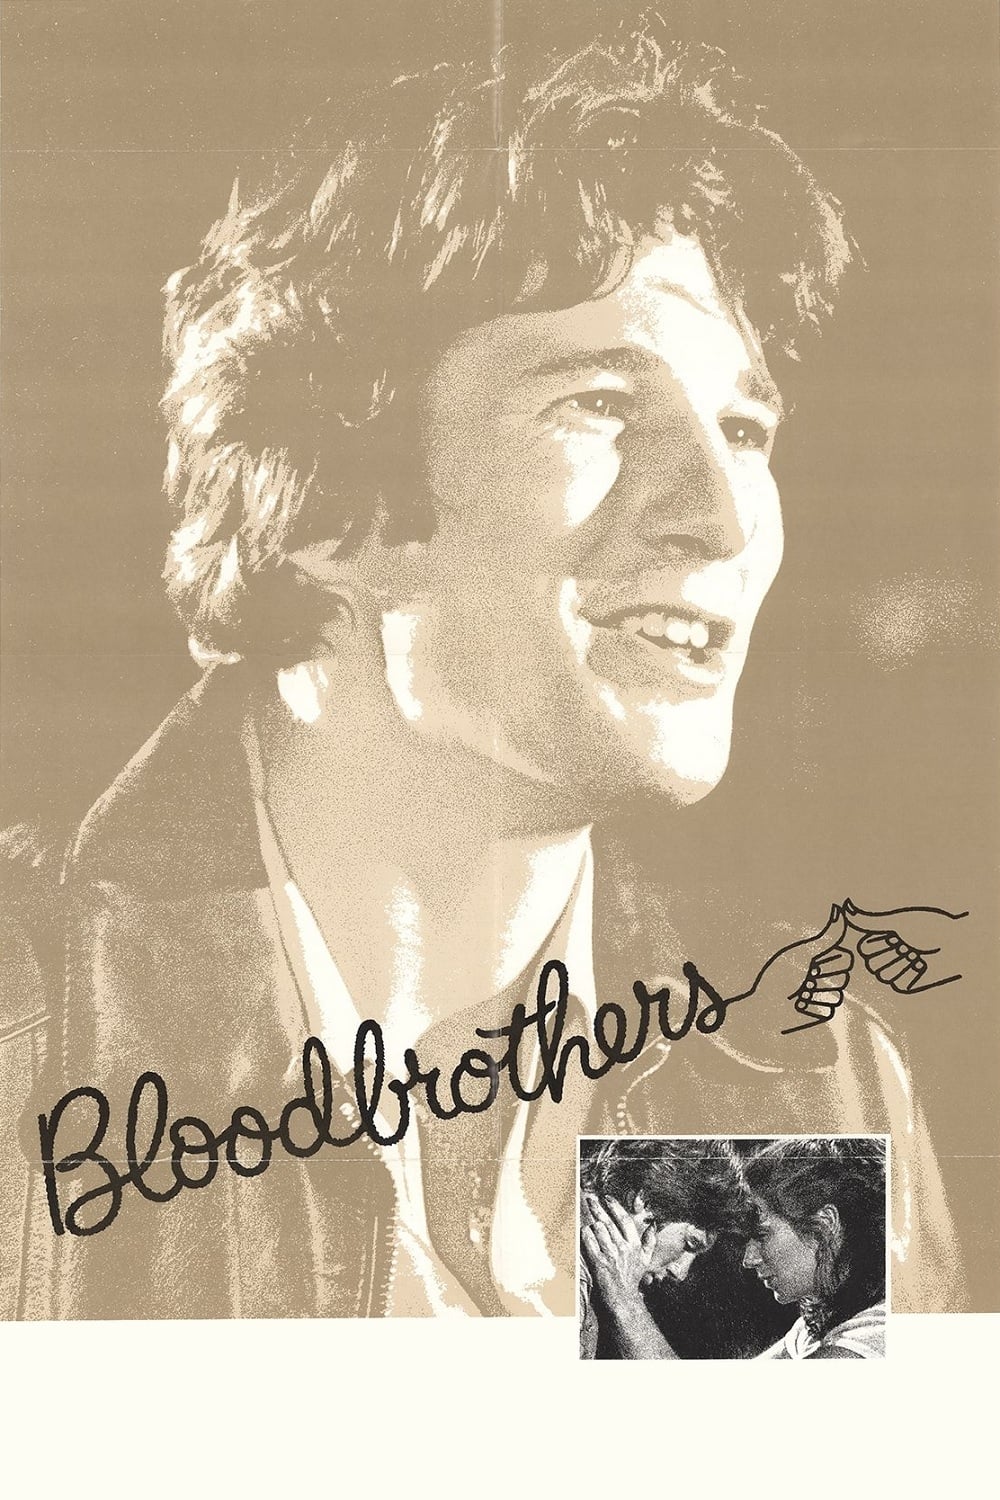 Plakat von "Bloodbrothers"